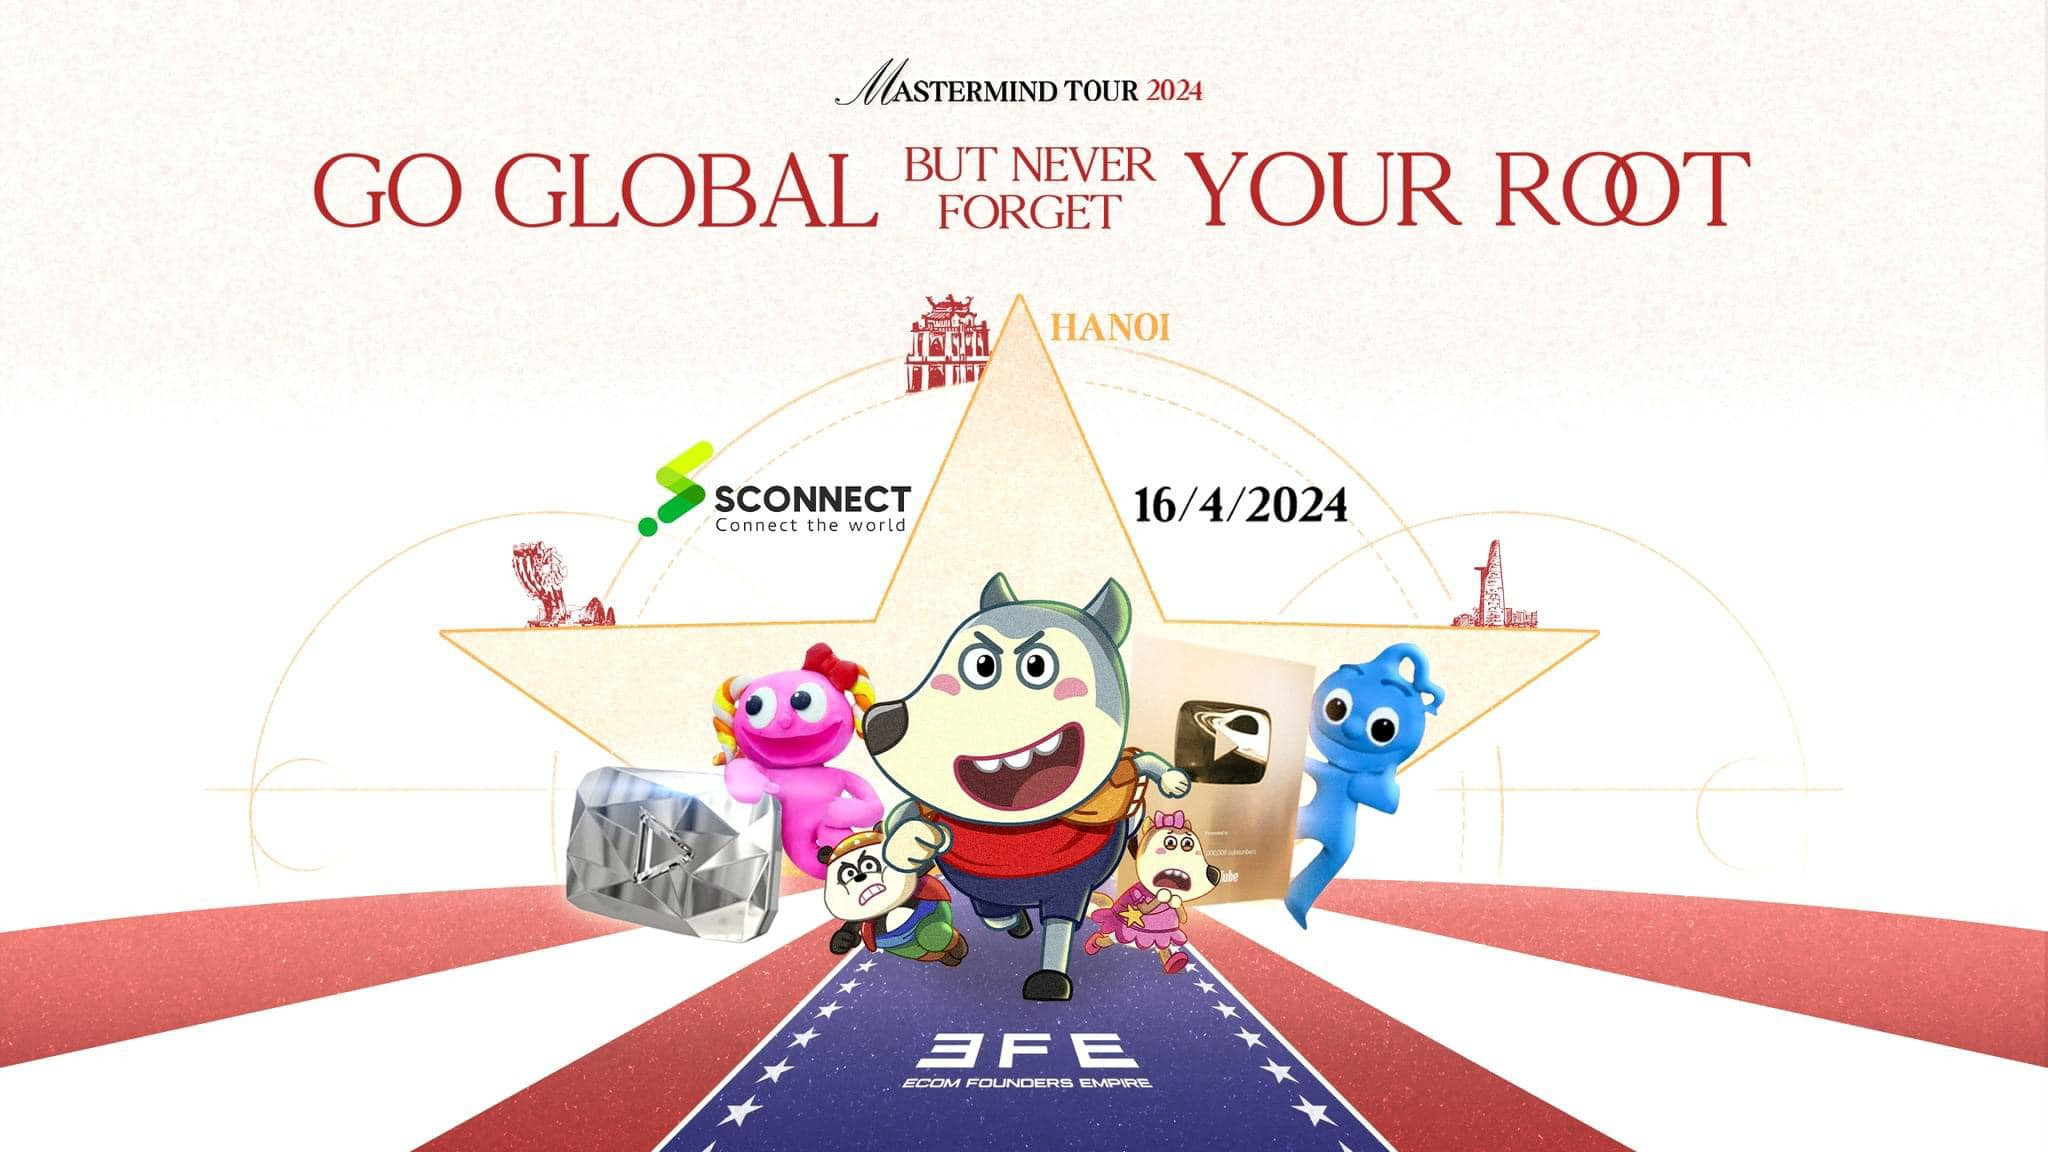 [16/04/2024] Mastermind Tour 2024 - Lưu giữ cội nguồn trên hành trình quốc tế